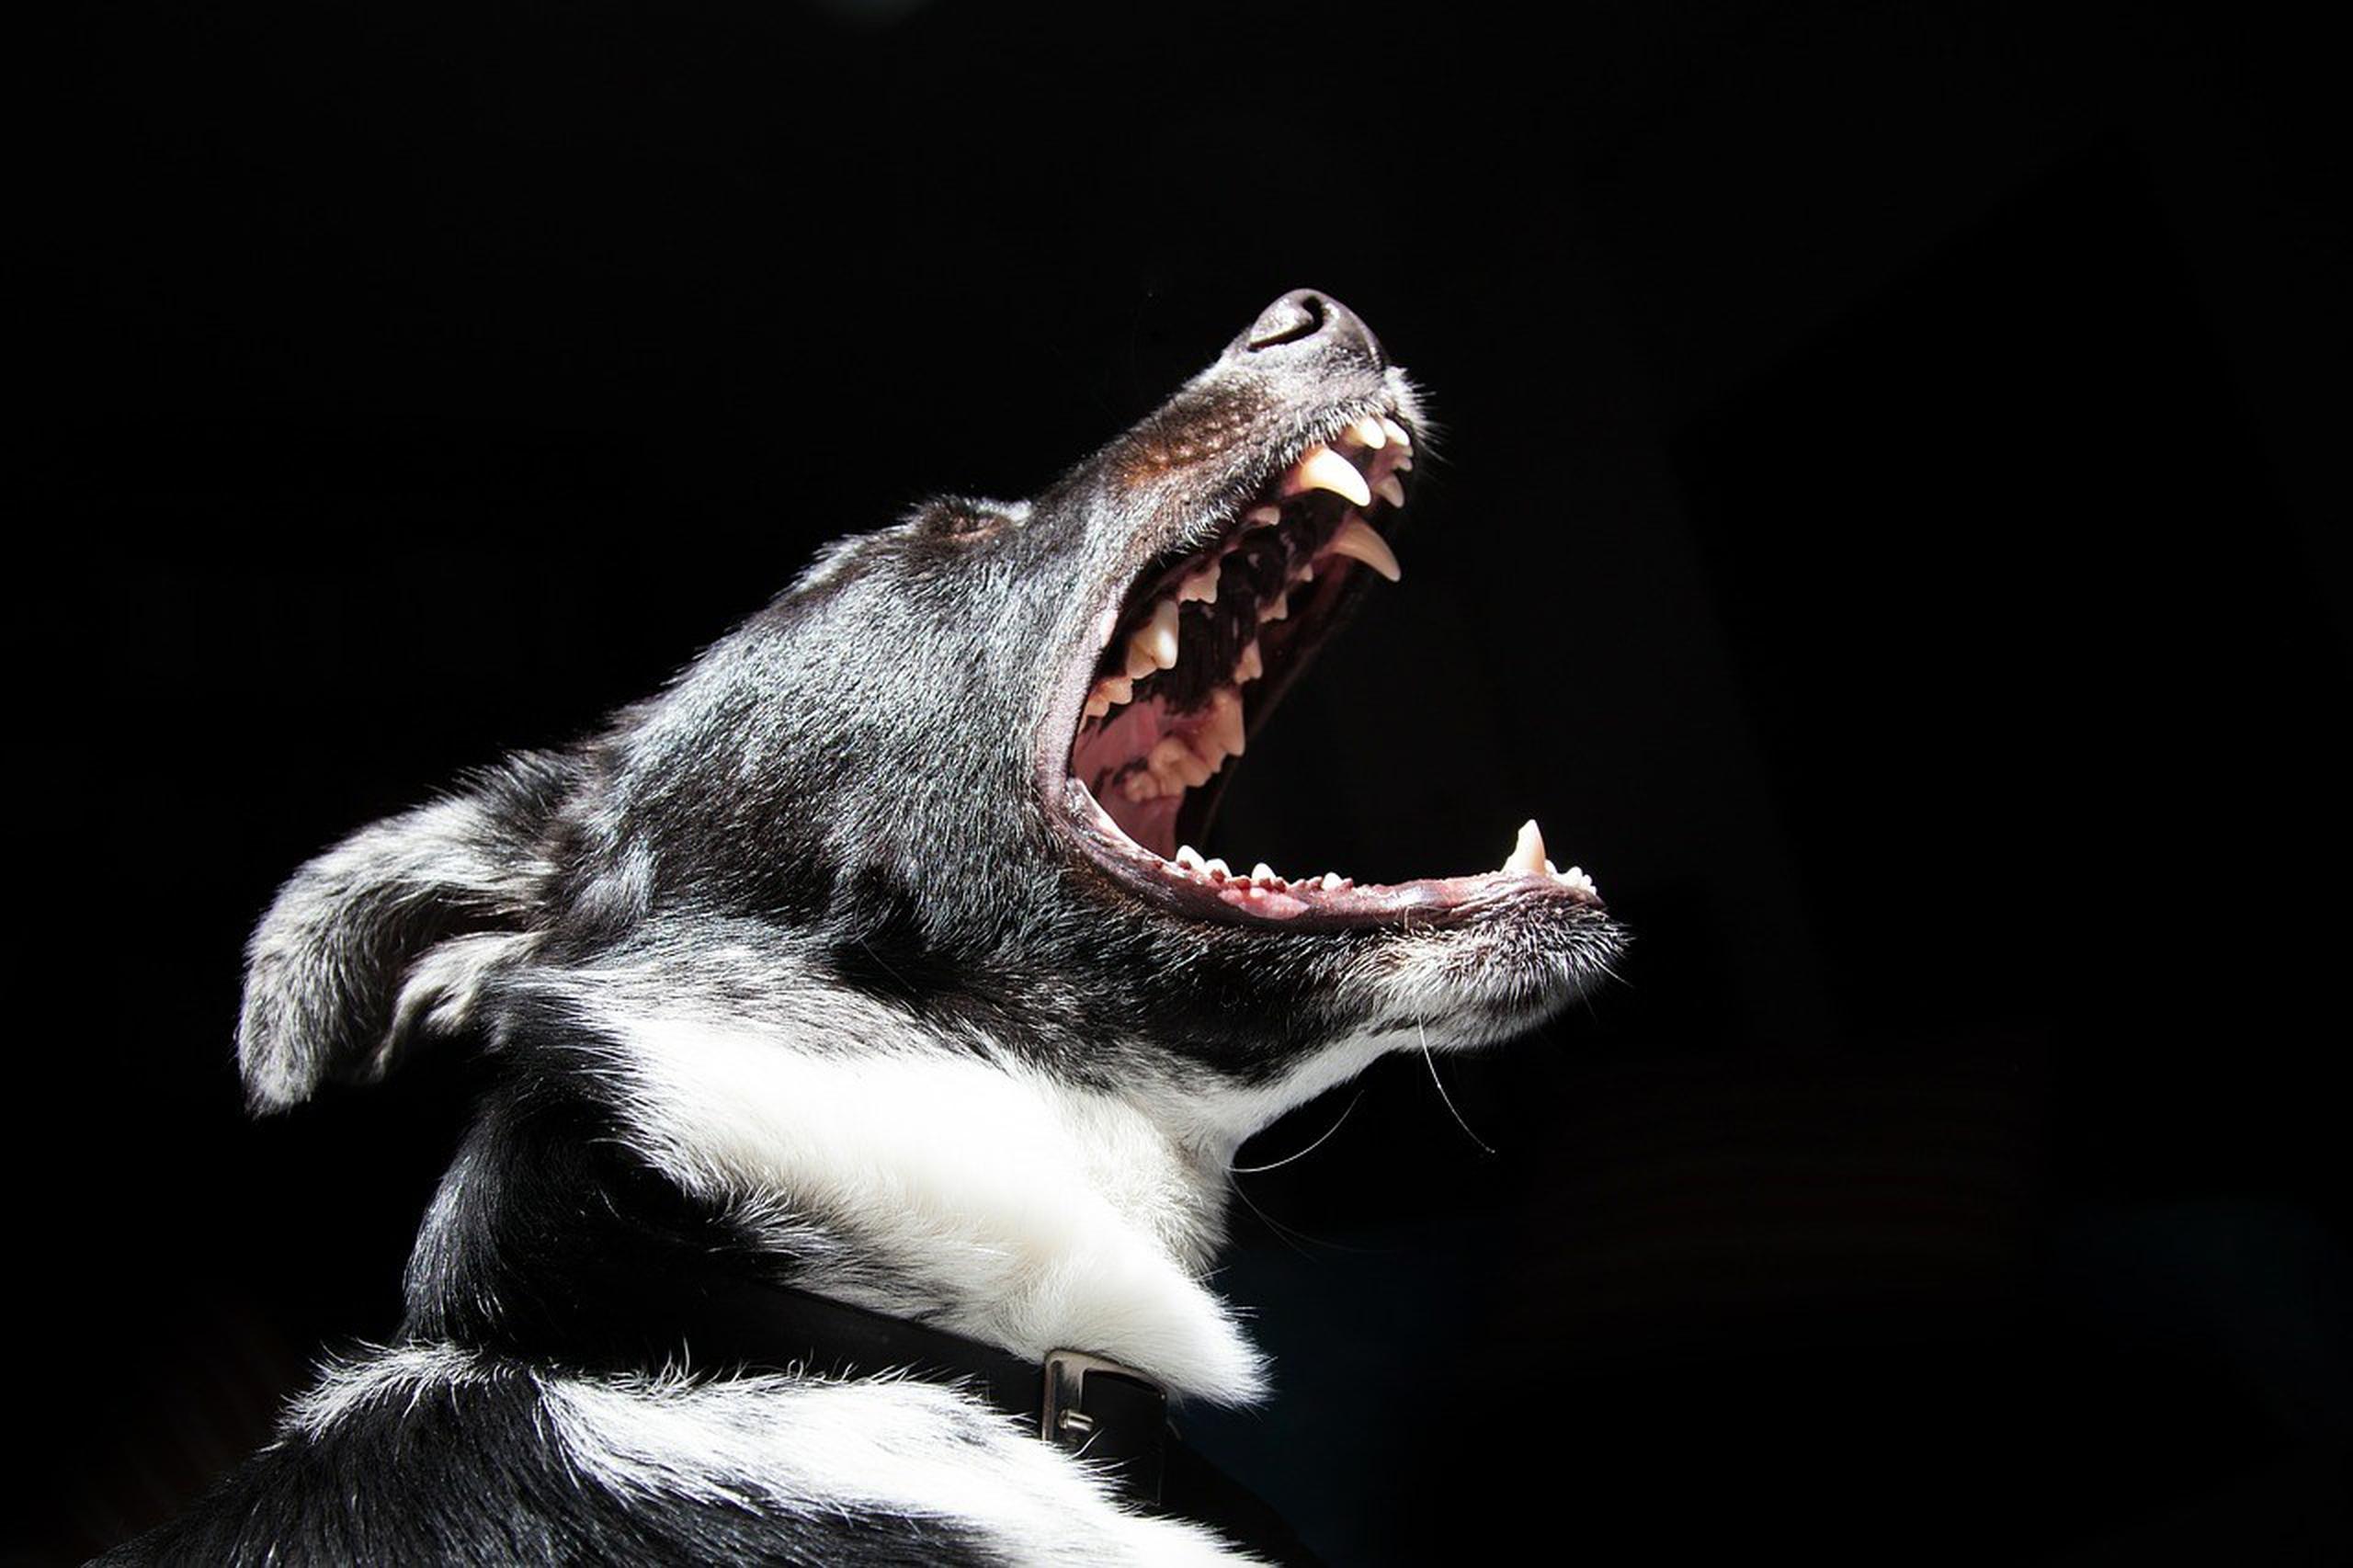 Las agencias locales de animales colocaron trampas para perros y lograron la captura de seis canes, cuyas mordidas coinciden con las que presenta el cuerpo de la víctima. (Pixabay)